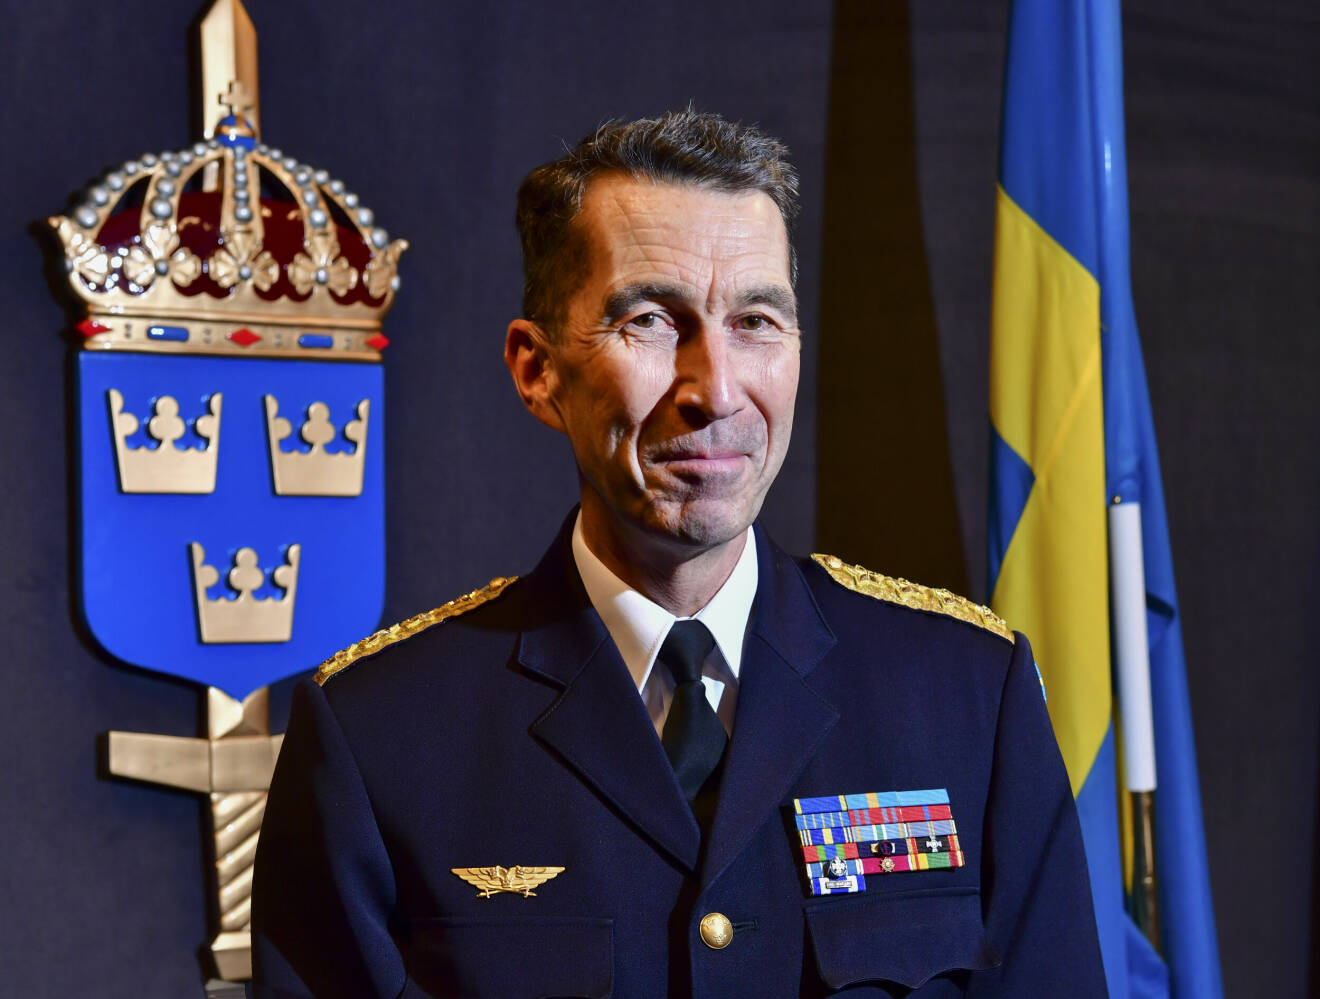 Överbefälhavaren Micael Bydén på högkvarteret i Stockholm